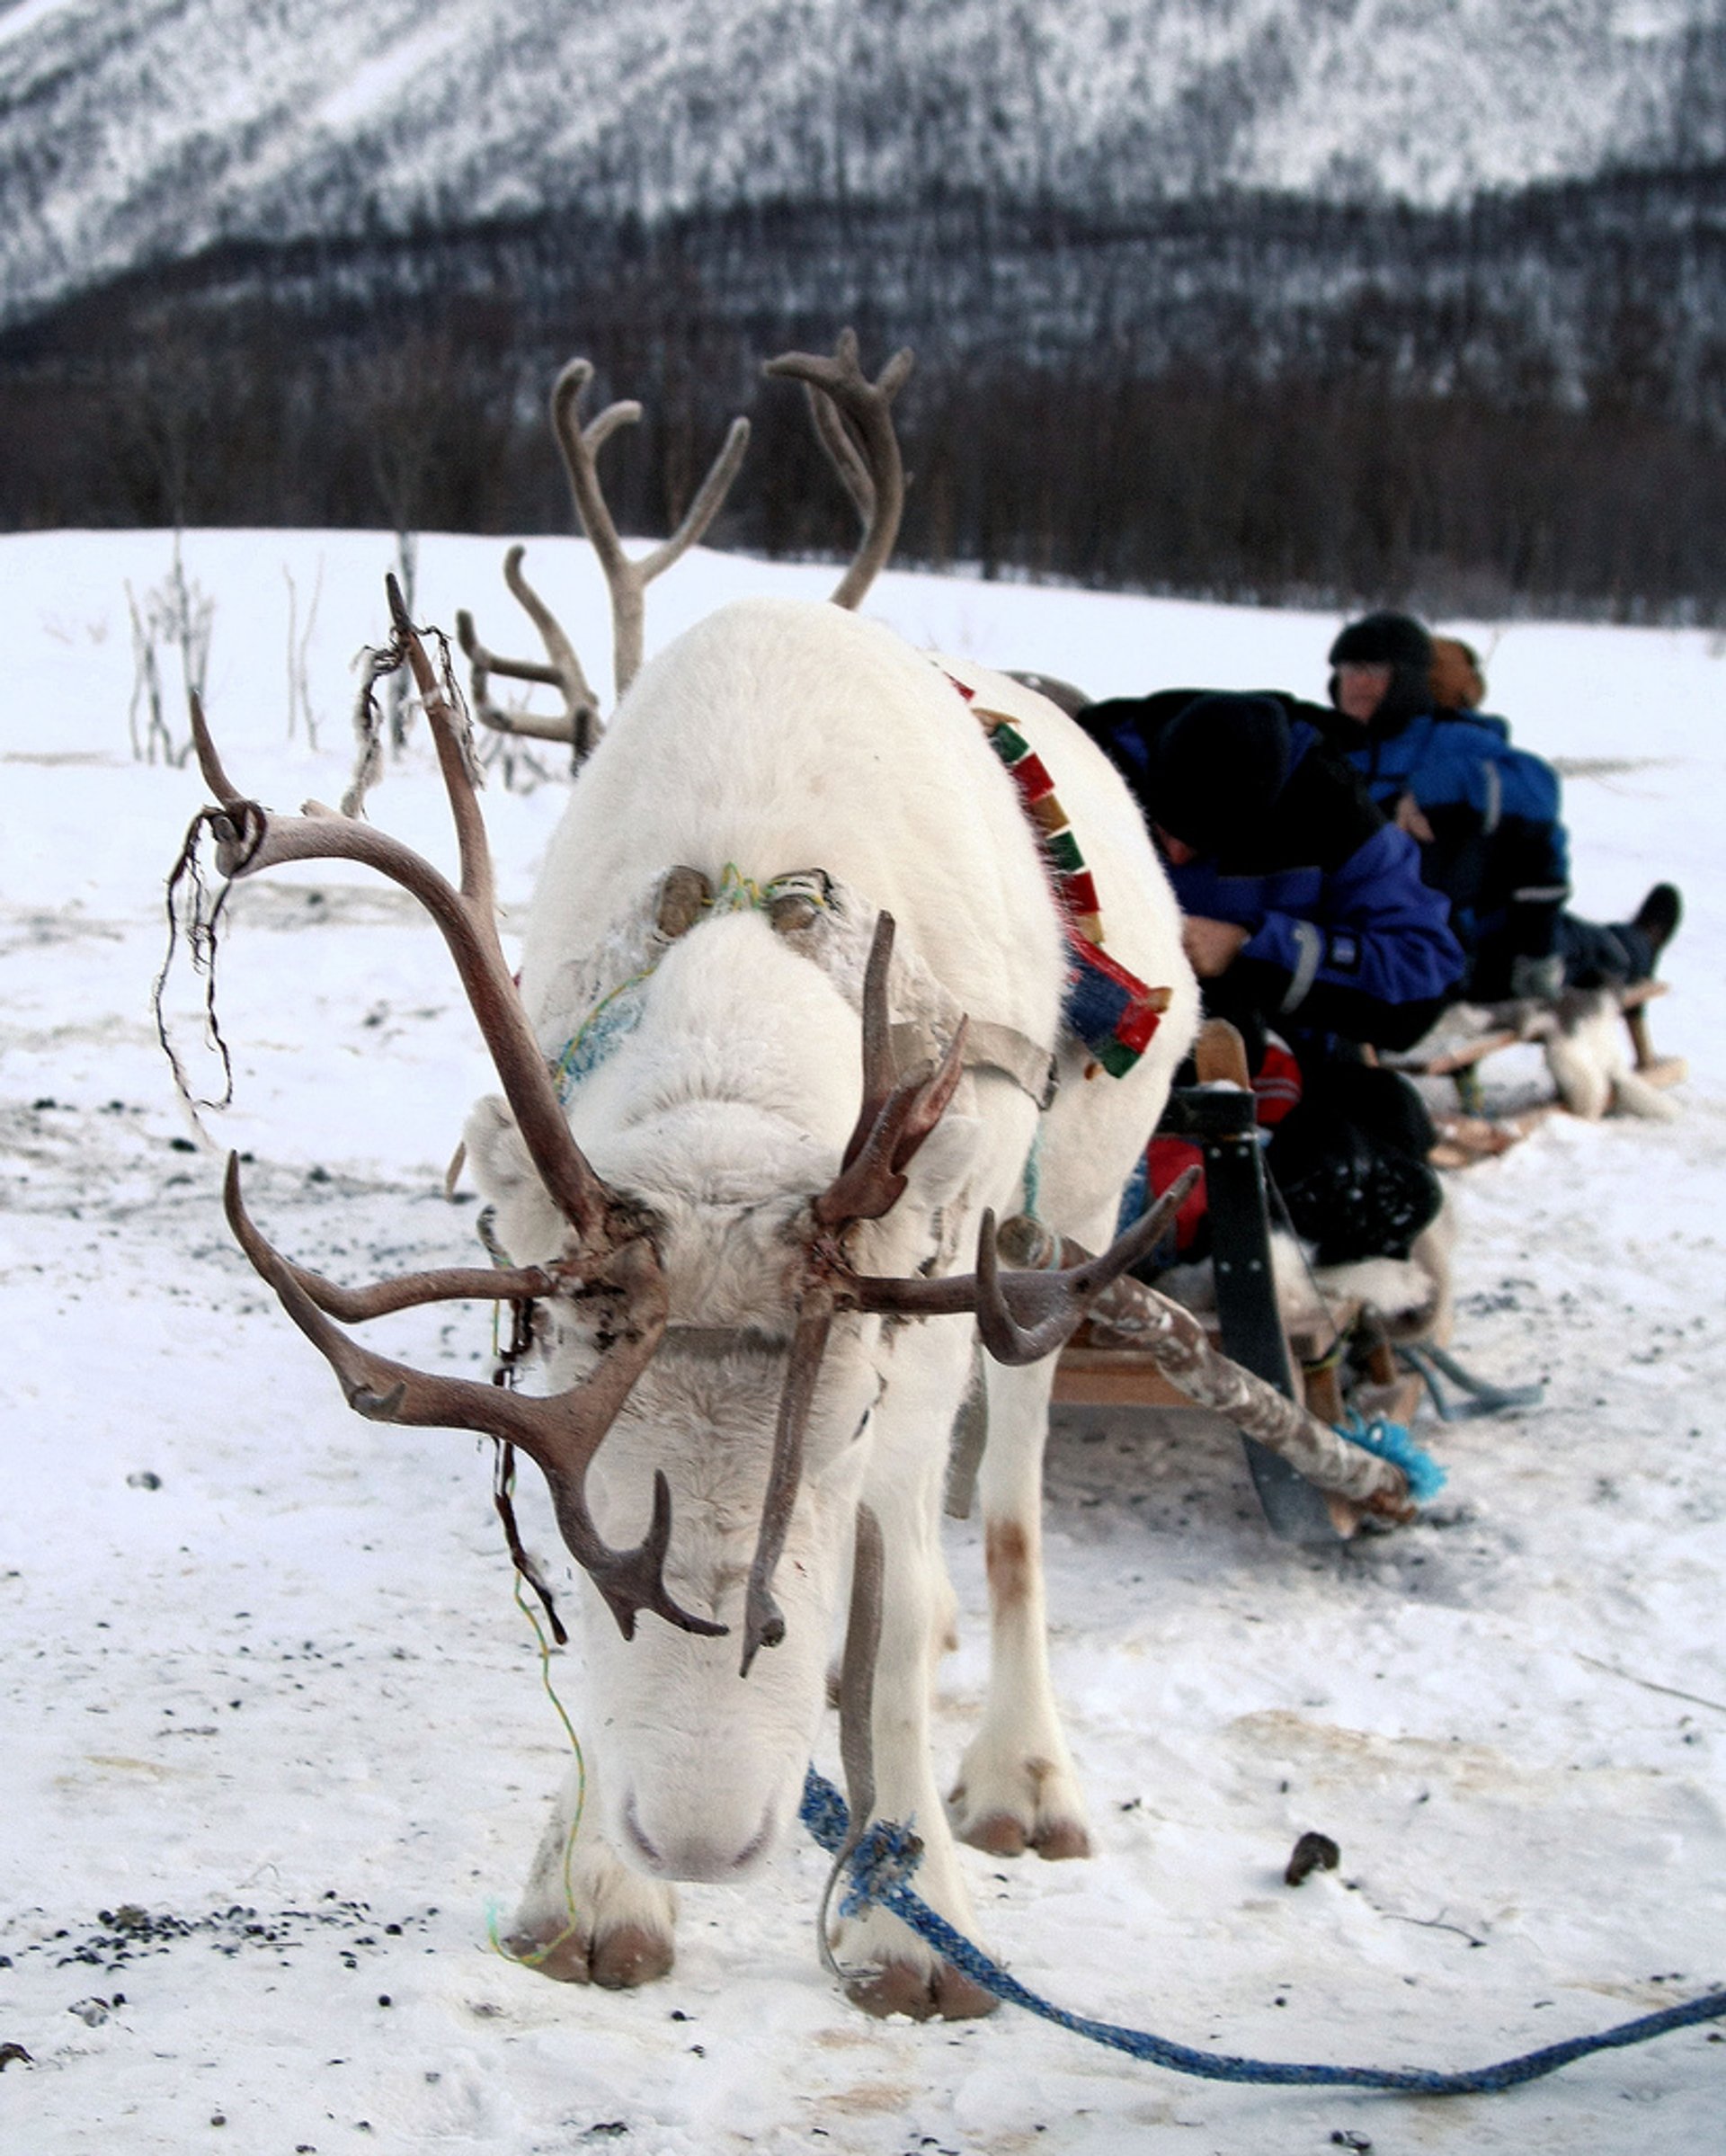 Traîneau à rennes et culture sami